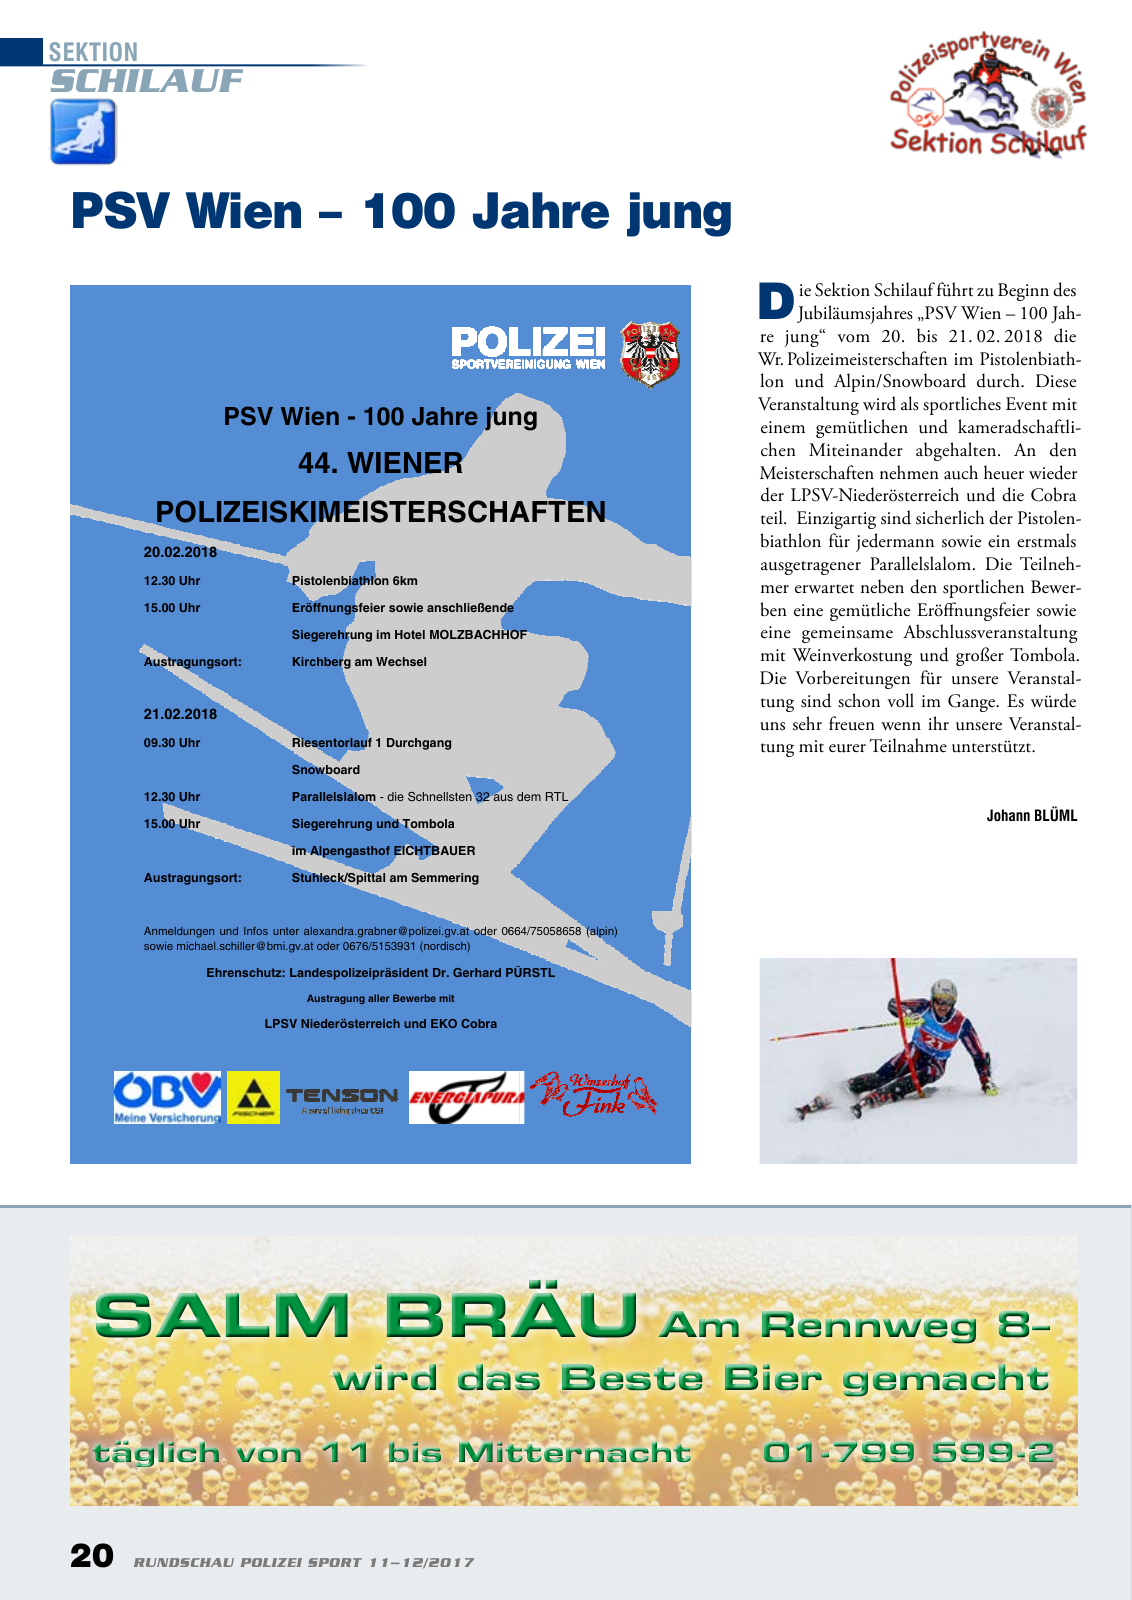 Vorschau Rundschau Polizei Sport 11-12/2017 Seite 20